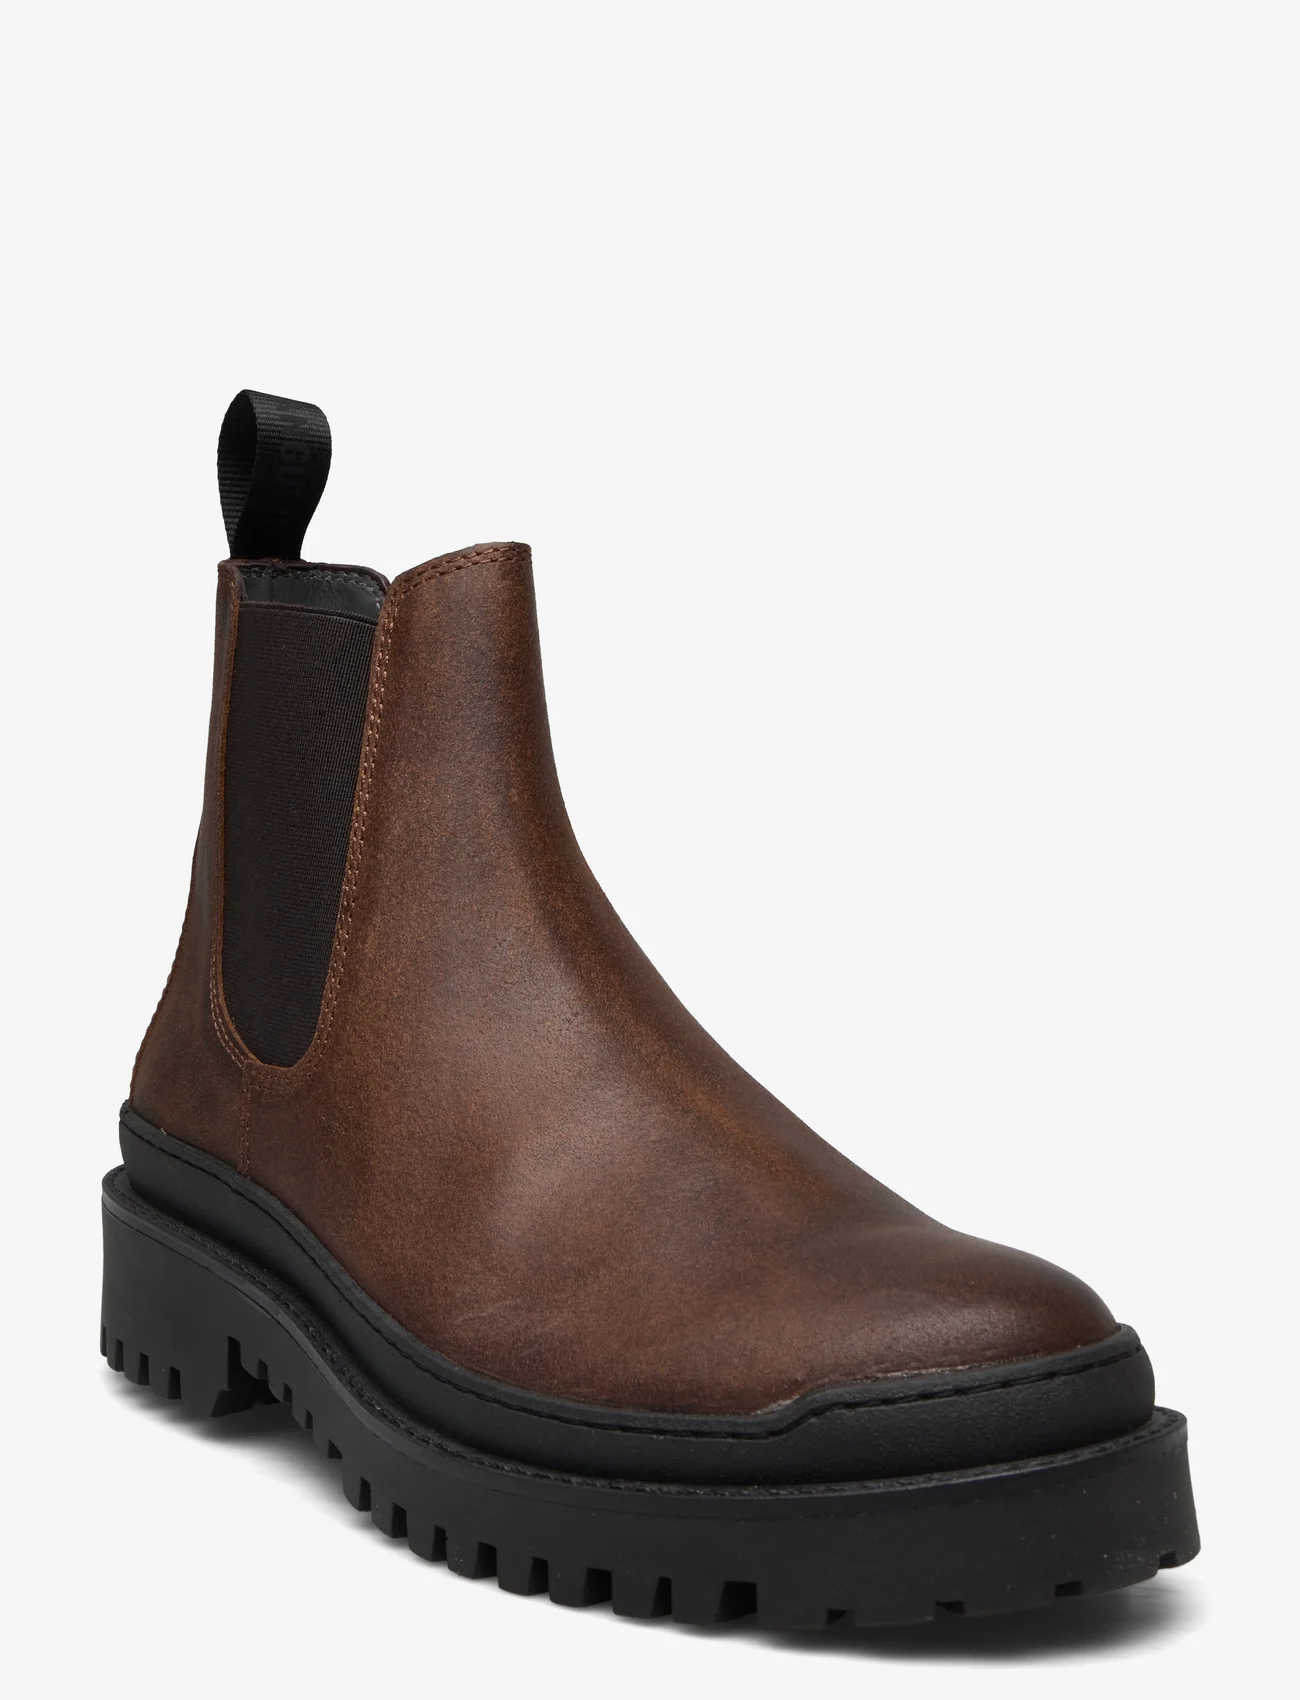 ANGULUS - Boots - flat - sünnipäevakingitused - 2108/002 brown/brown - 0